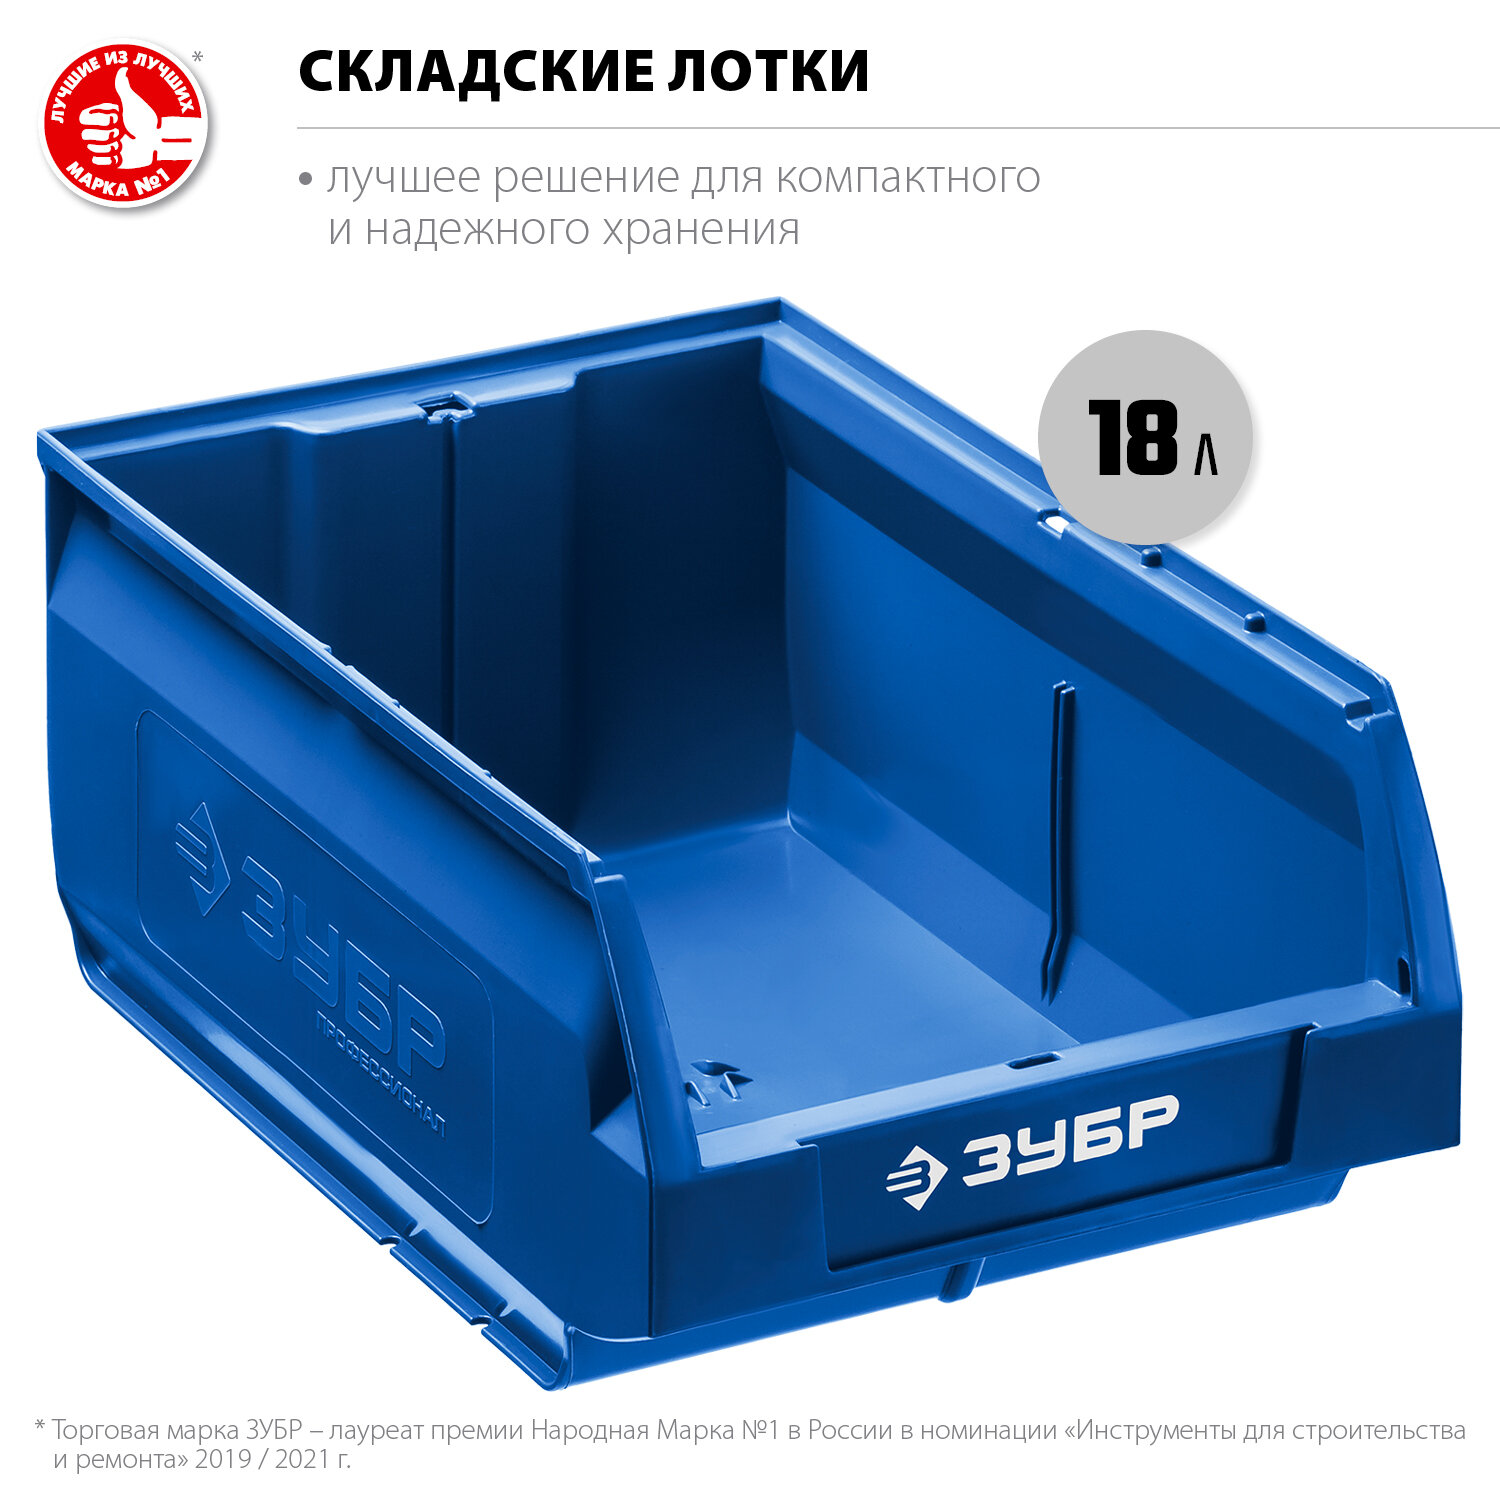 Пластиковый ящик ЗУБР 38061-18, 18 л, Россия